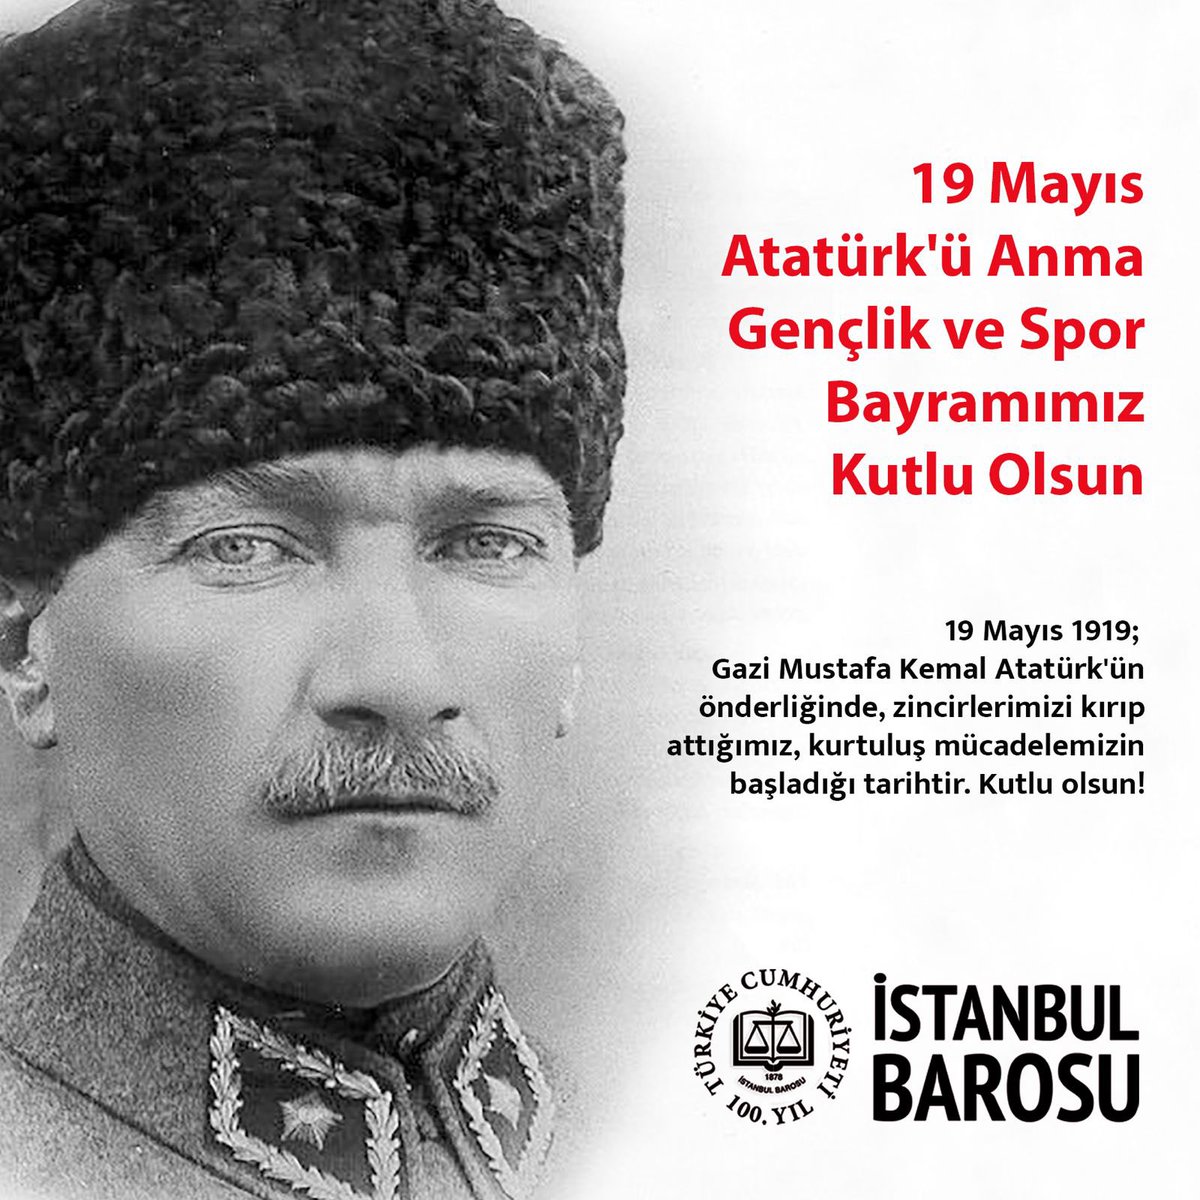 19 Mayıs Atatürk'ü Anma Gençlik ve Spor Bayramımız Kutlu Olsun 19 Mayıs 1919; Gazi Mustafa Kemal Atatürk'ün önderliğinde, zincirlerimizi kırıp attığımız, kurtuluş mücadelemizin başladığı tarihtir. Kutlu olsun!